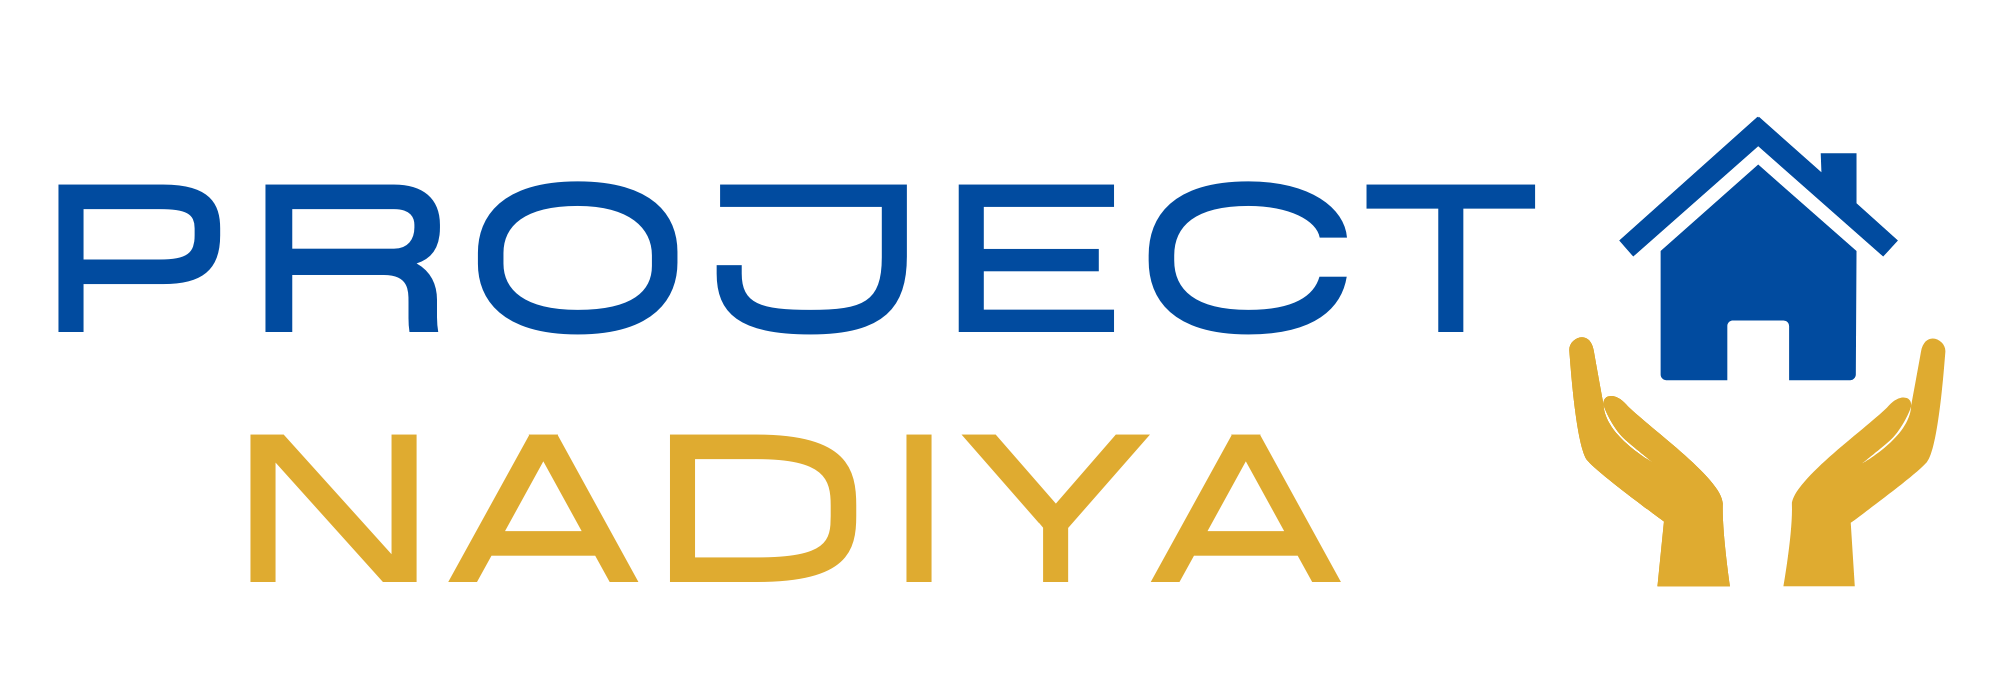 Project Nadiya